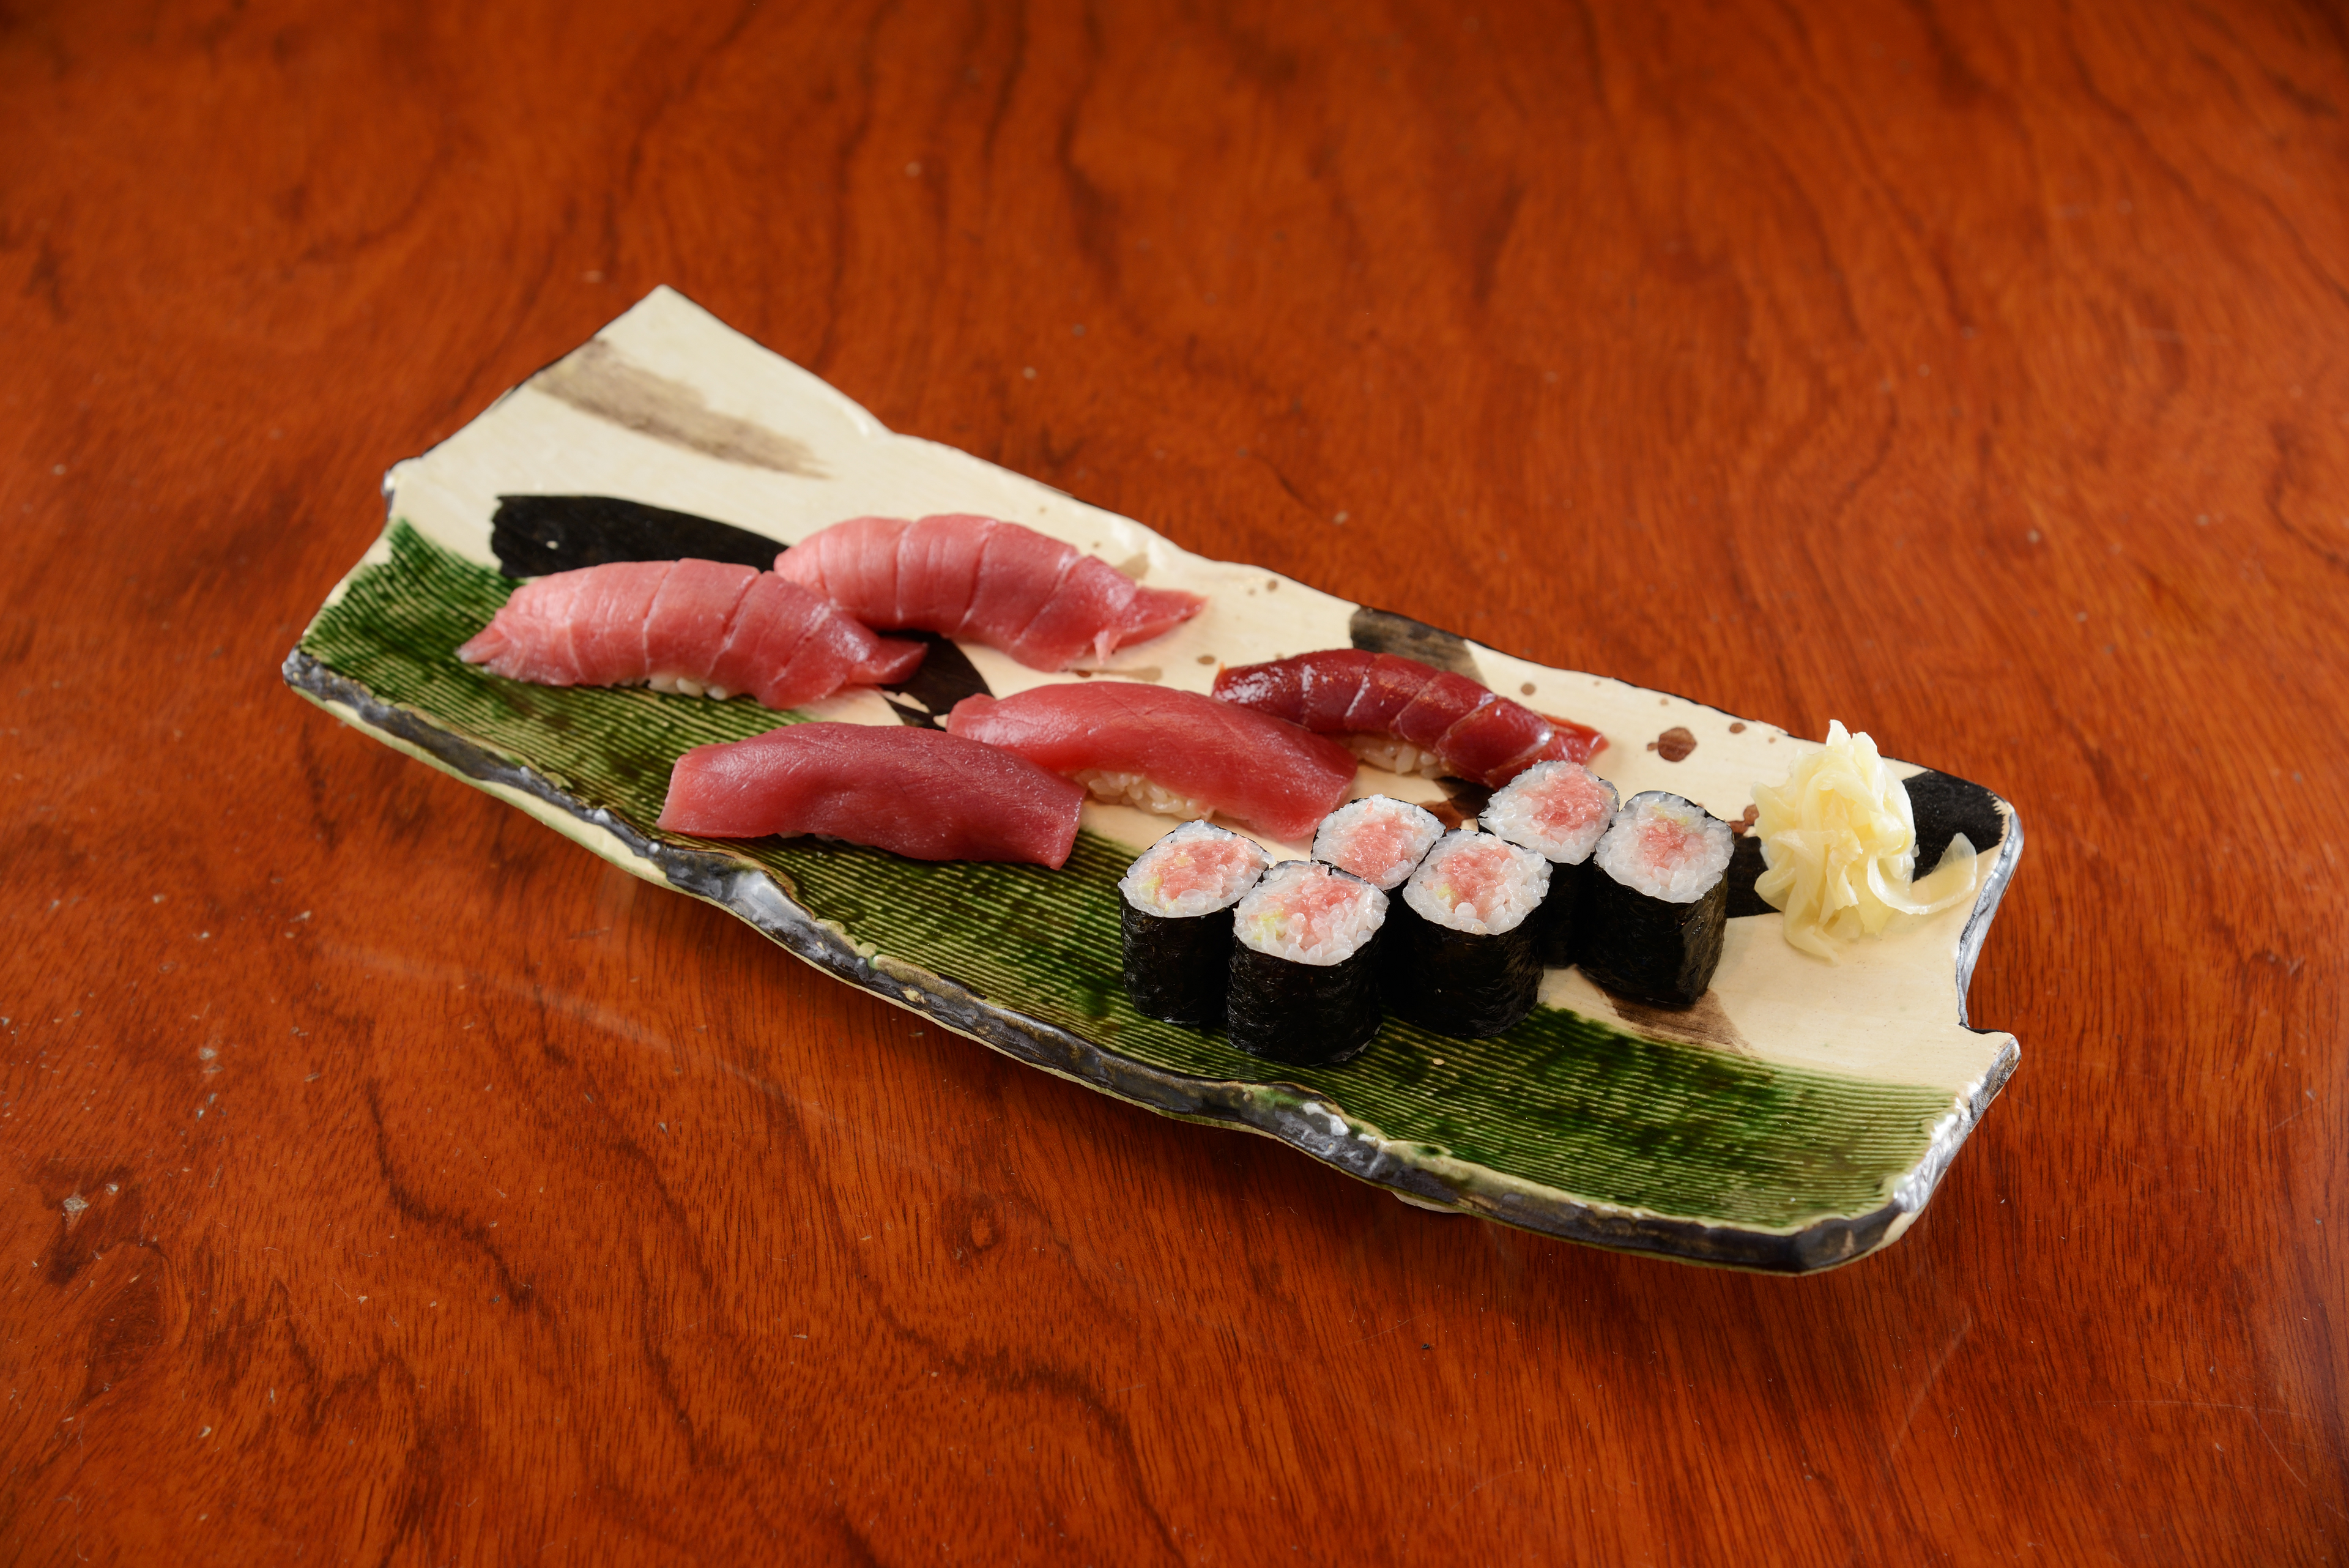 國產野生藍鰭金槍魚握壽司的照片